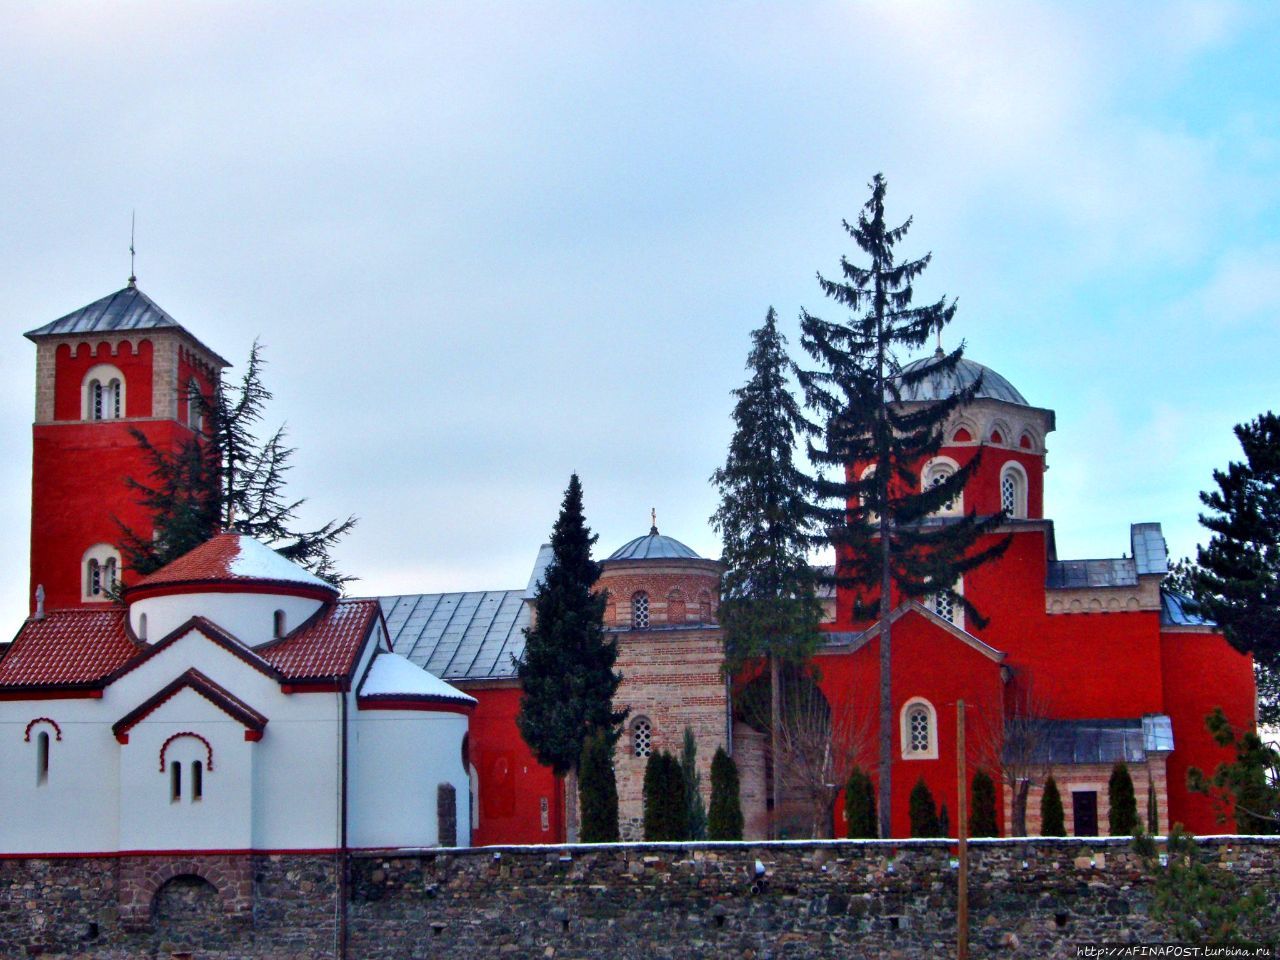 Монастырь Жича / Monastery Zica